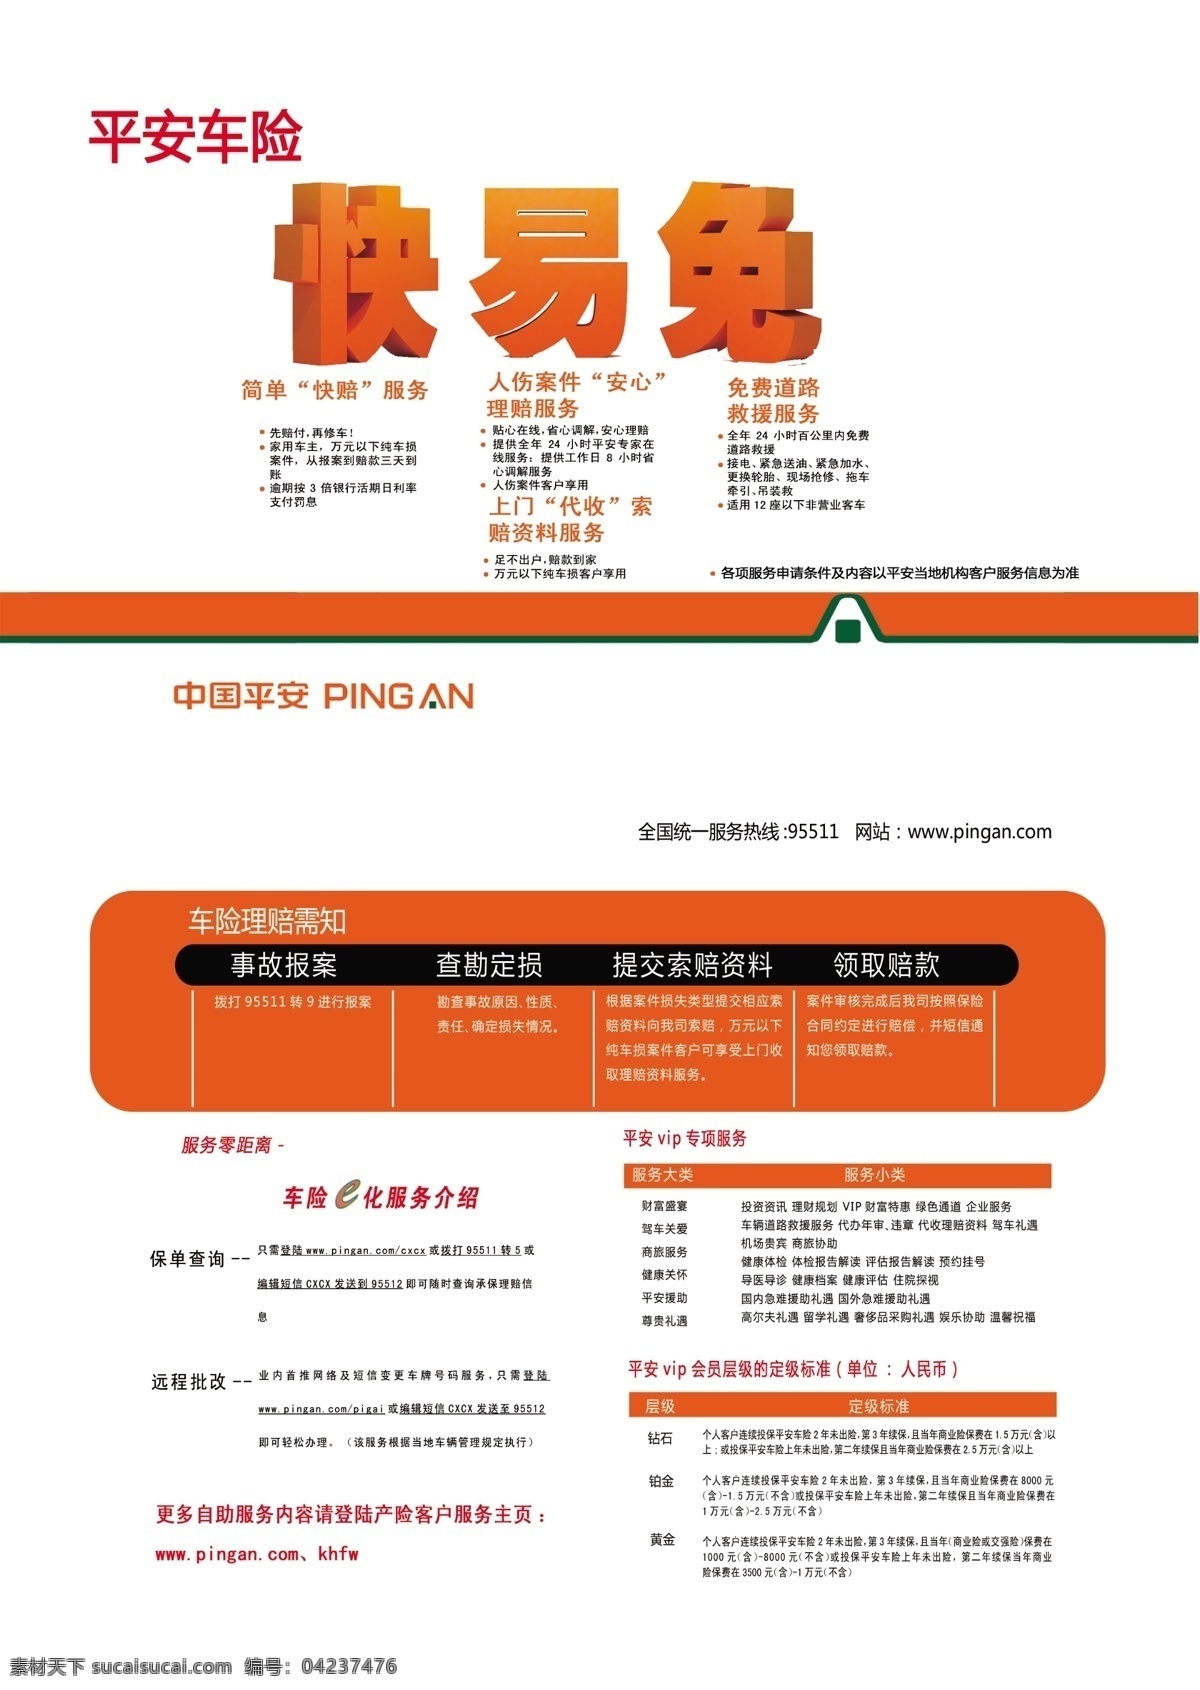 中国平安 宣传单 快易免 标志 理赔流程 dm宣传单 广告设计模板 源文件